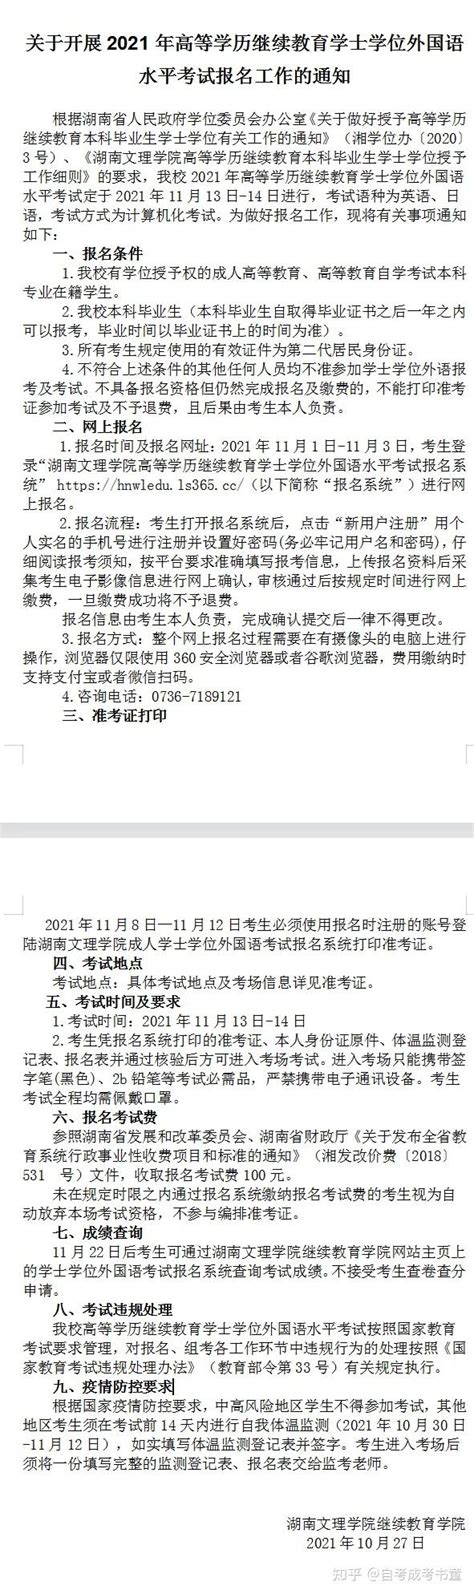 河北省成人本科学士学位外语报考流程及免冠证件照处理 - 语言考试报名照片